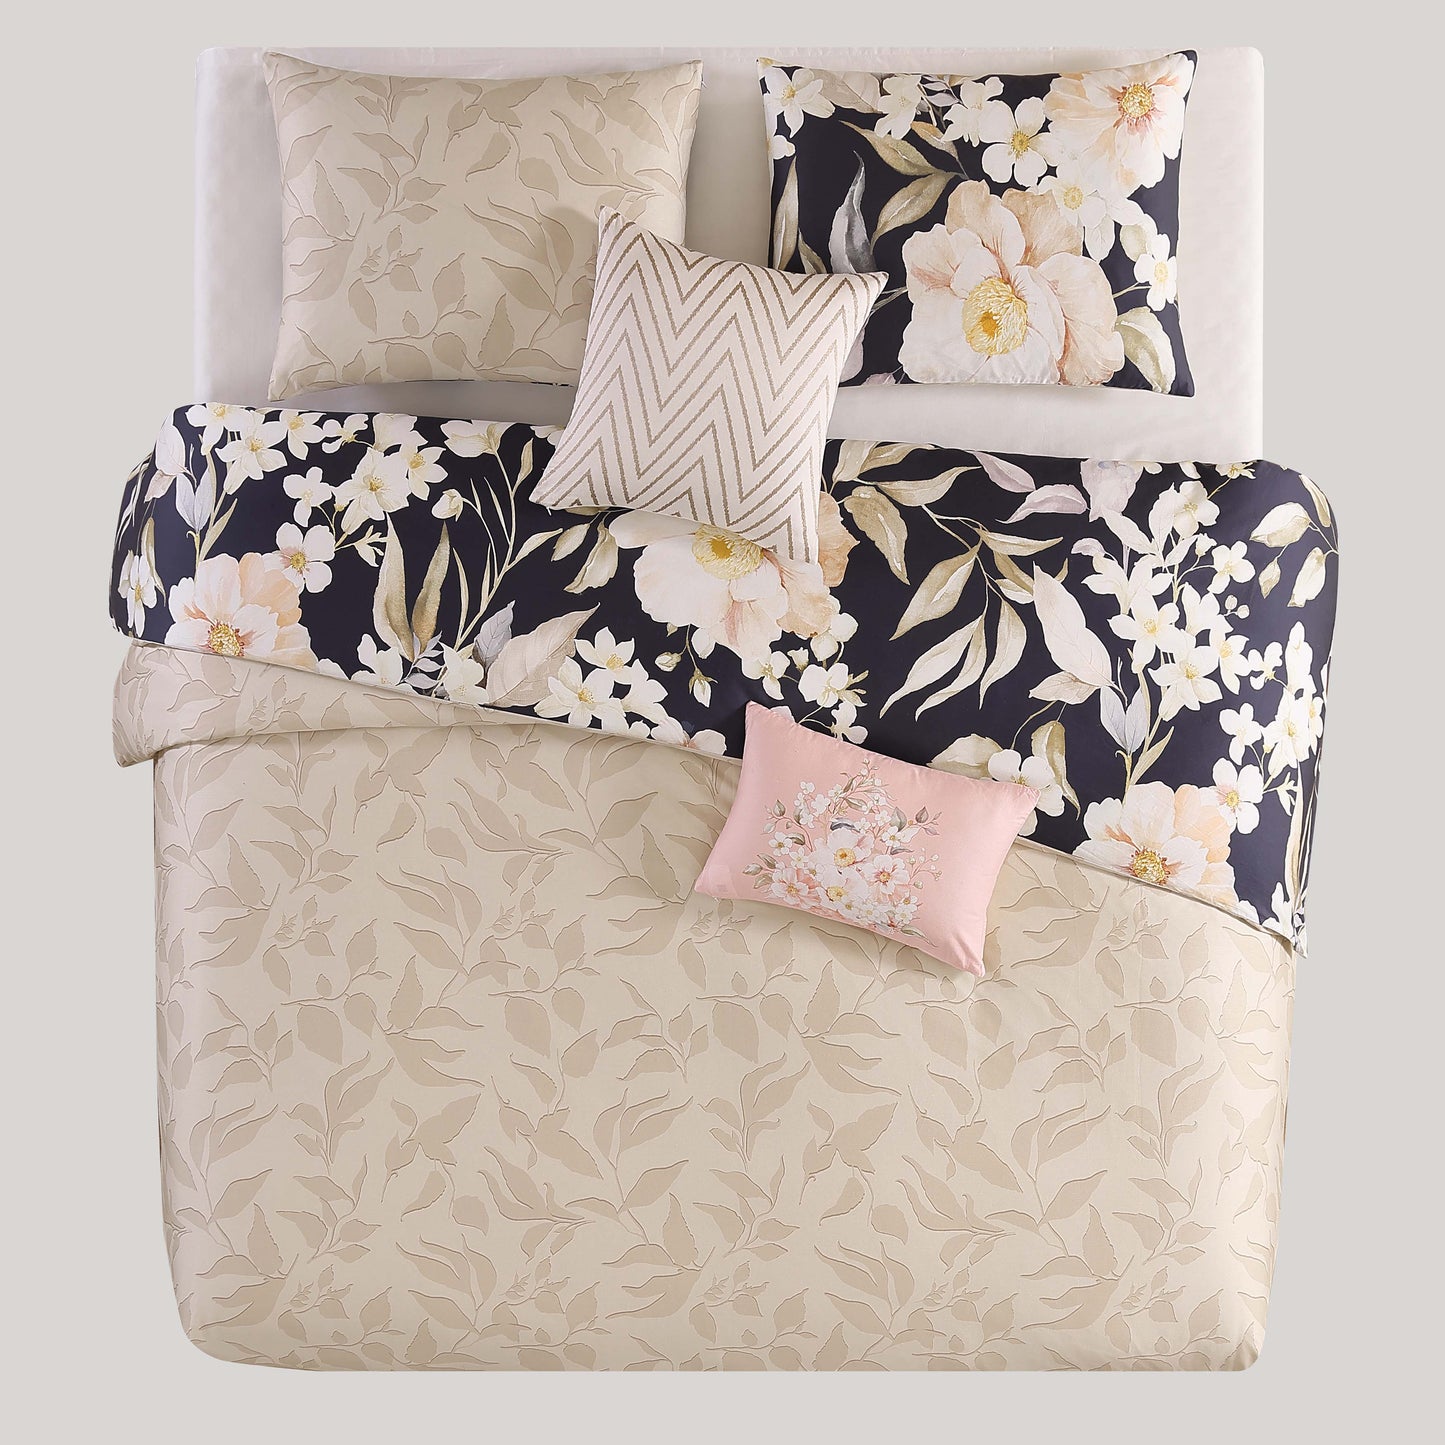 Bebejan Blush Flowers 100% Cotton 5-Piece Reversible Comforter Set Comforter Sets By Bebejan®